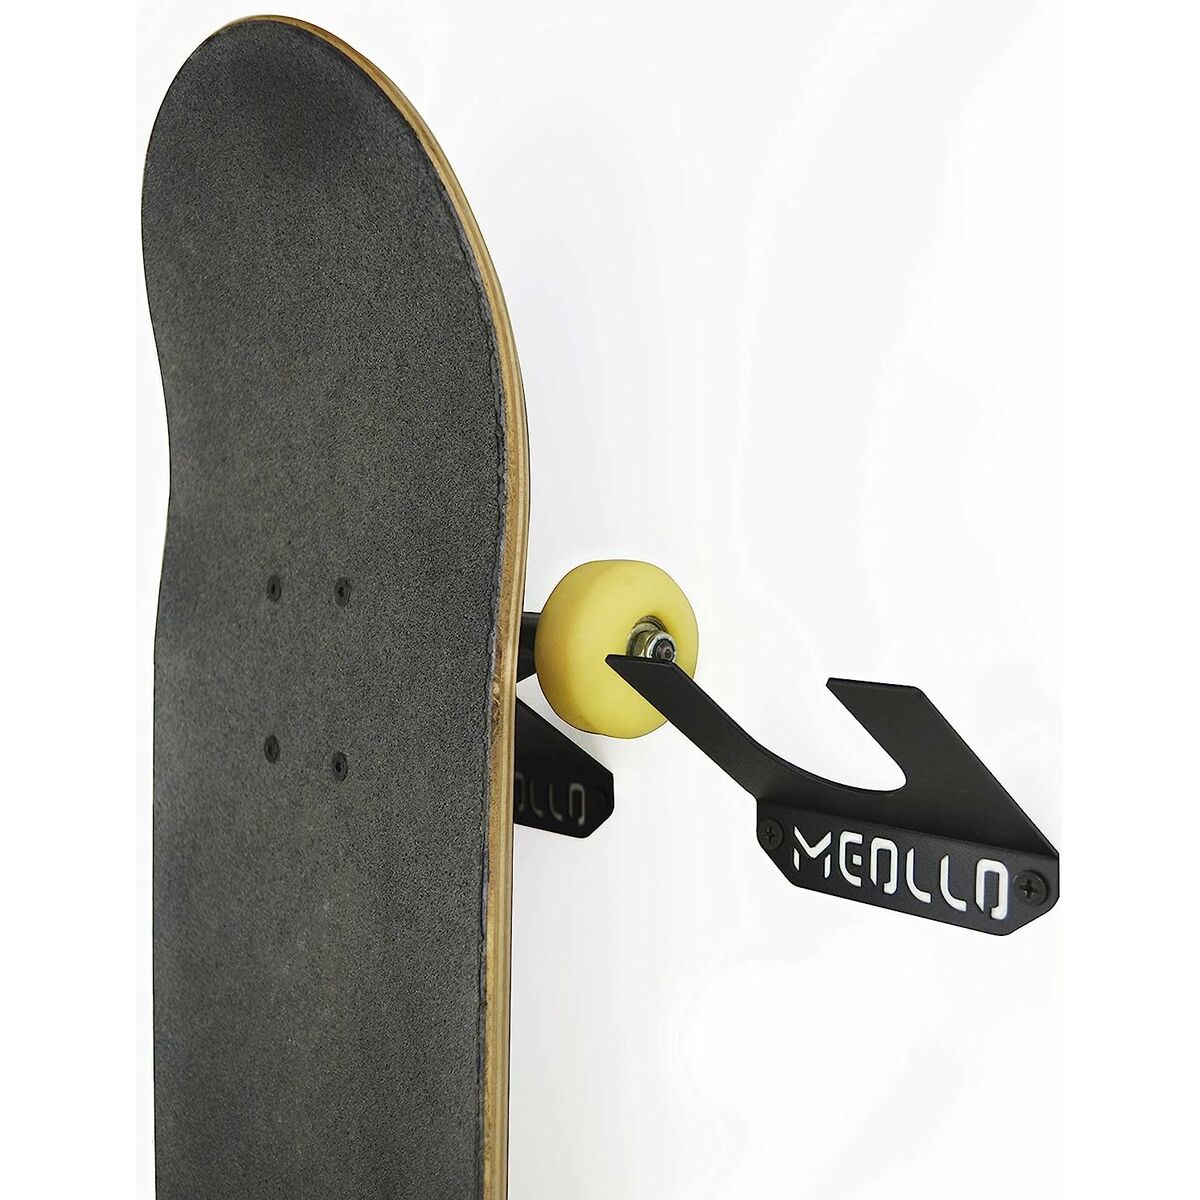 Soporte De Pared Para Skateboard Meollo 10 X 10 X 2 Cm (2 Unidades)